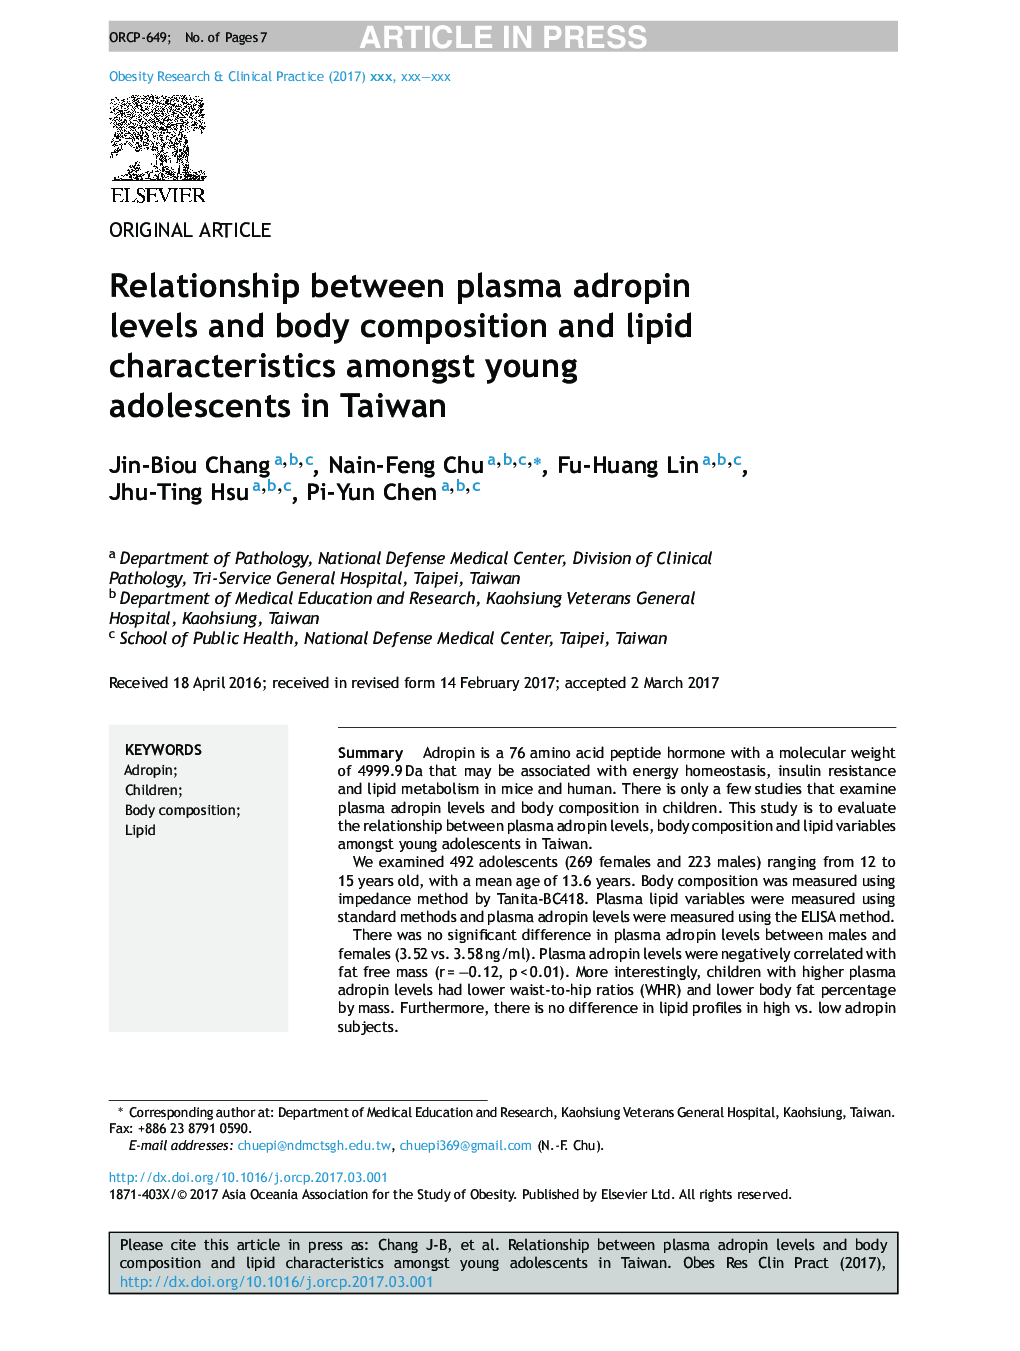 رابطه بین سطوح آدروفین پلاسما و ترکیب بدن و ویژگی های لیپید در نوجوانان جوان در تایوان 